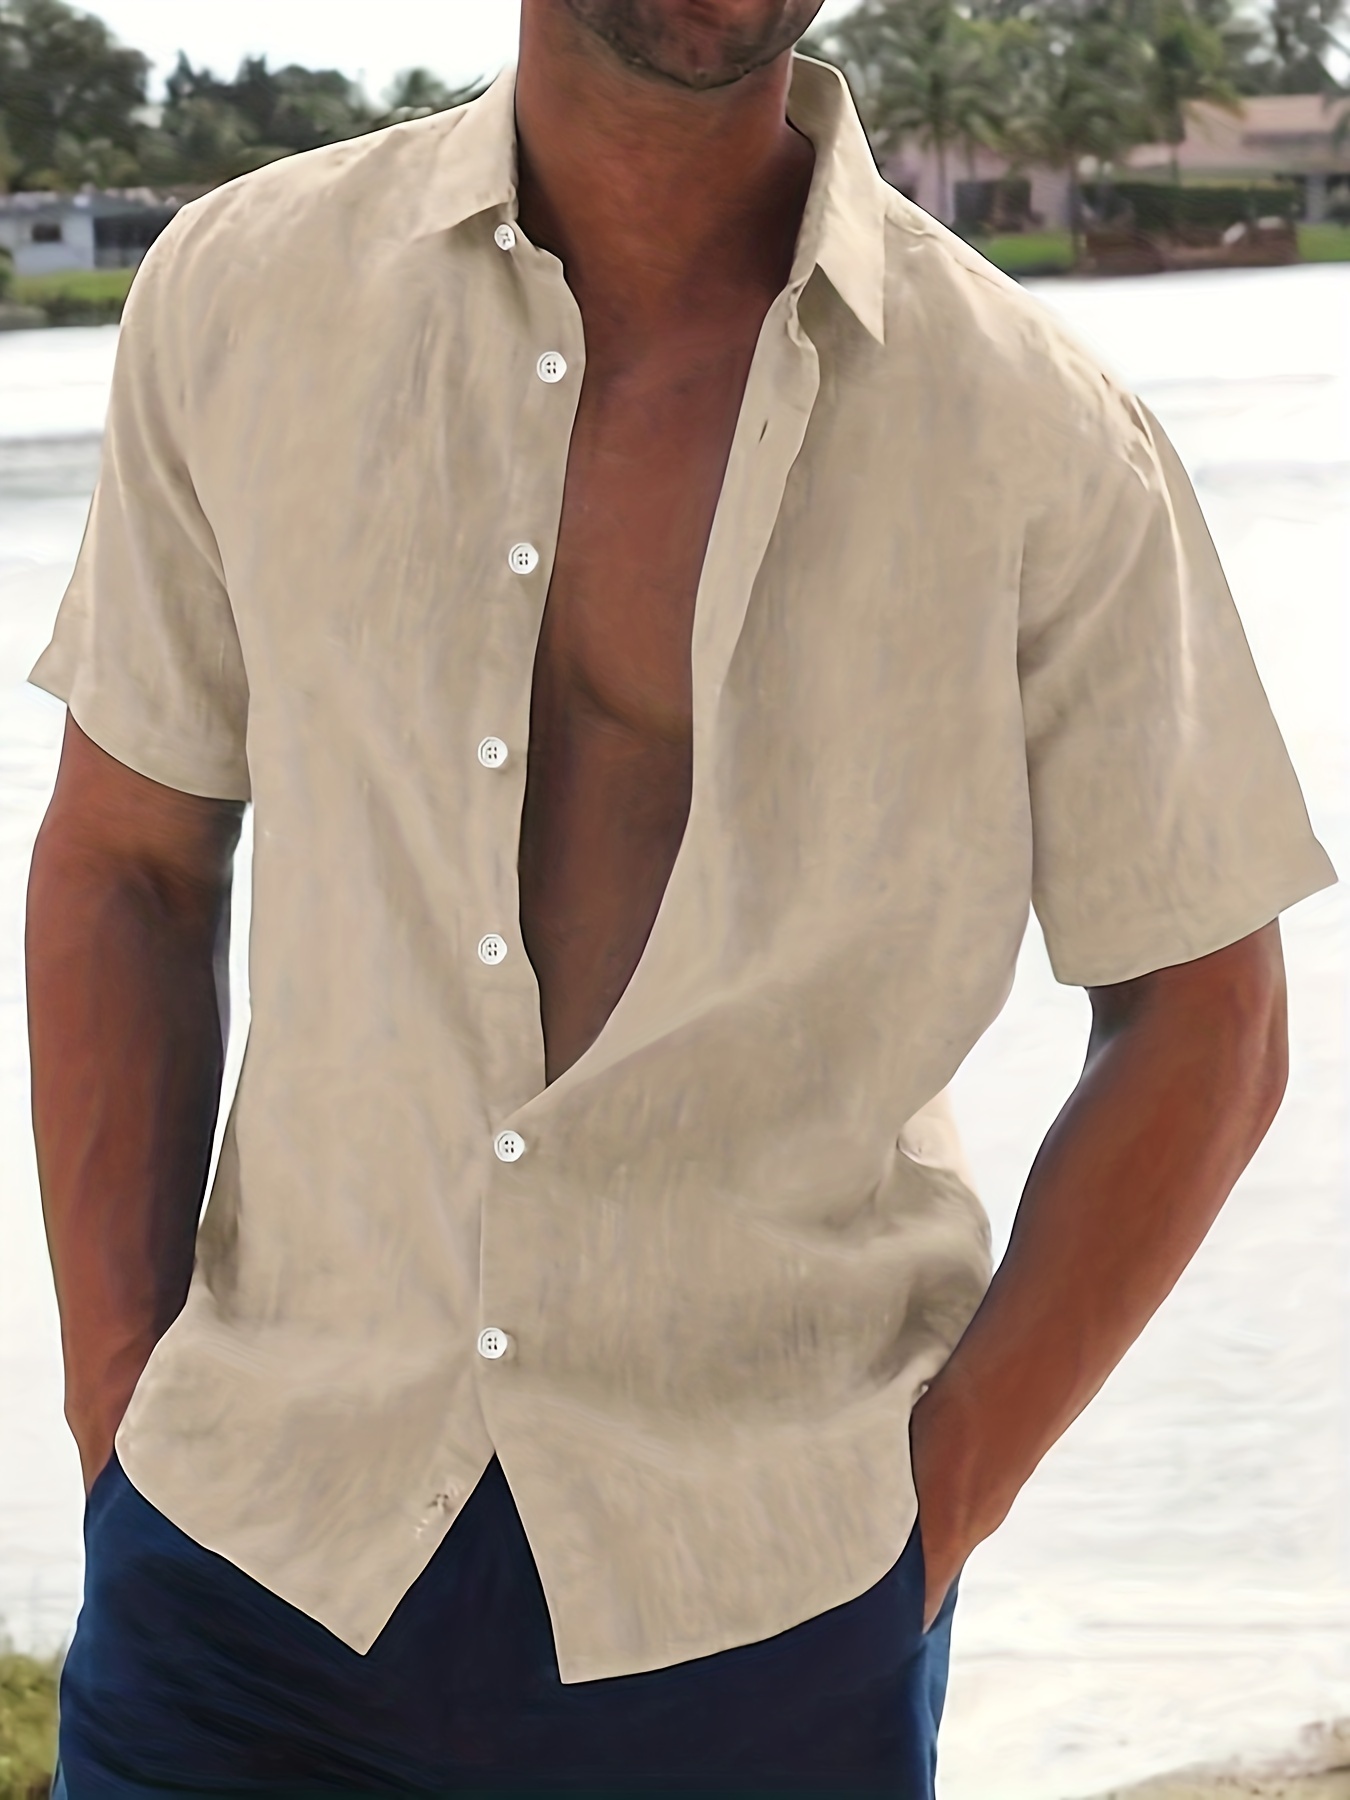 Men's Comfy Short Sleeve Shirt - Versatile for Beach, Resort, and Business Wear